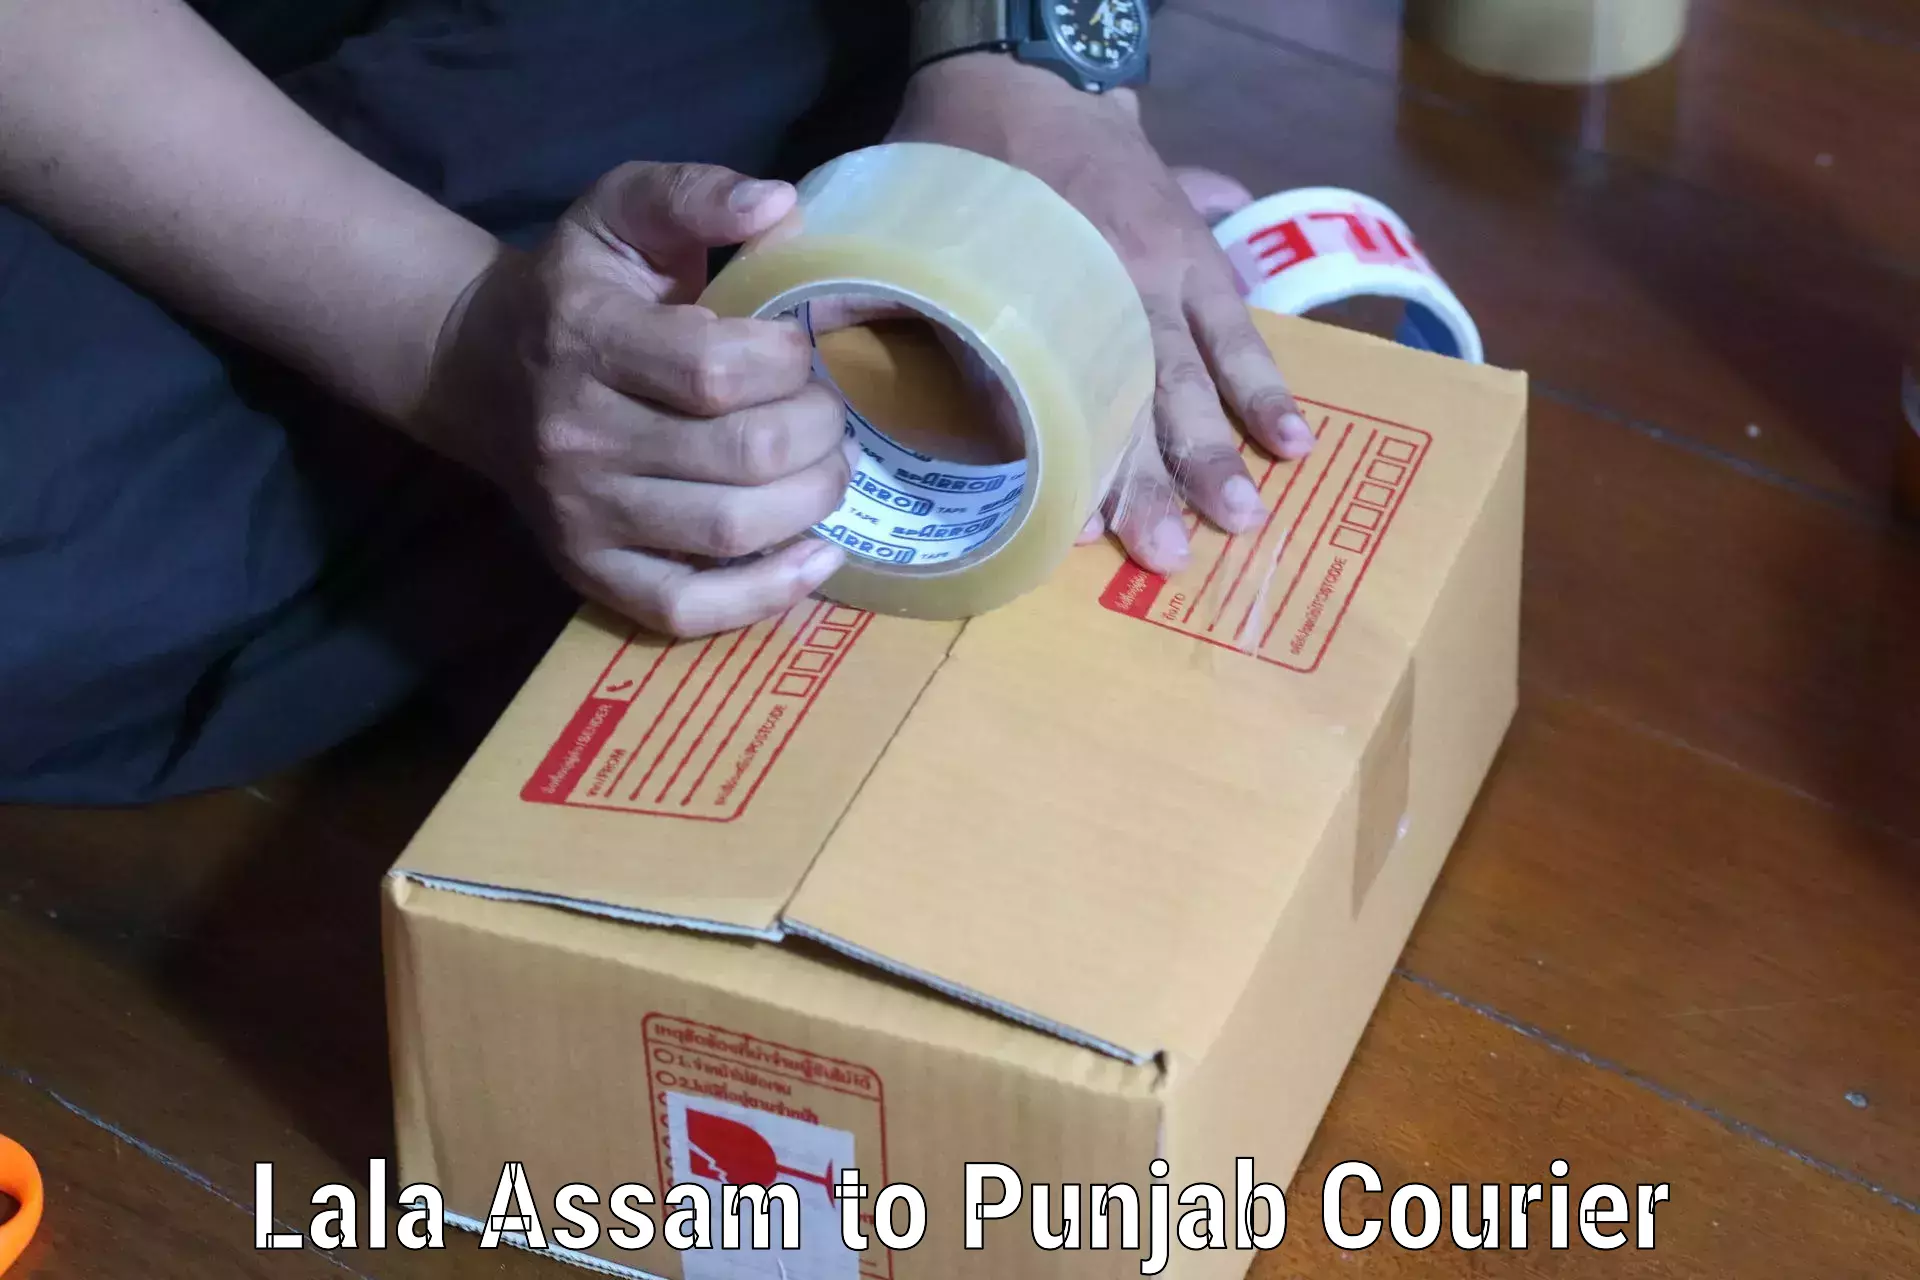 Courier service comparison Lala Assam to Nawanshahr